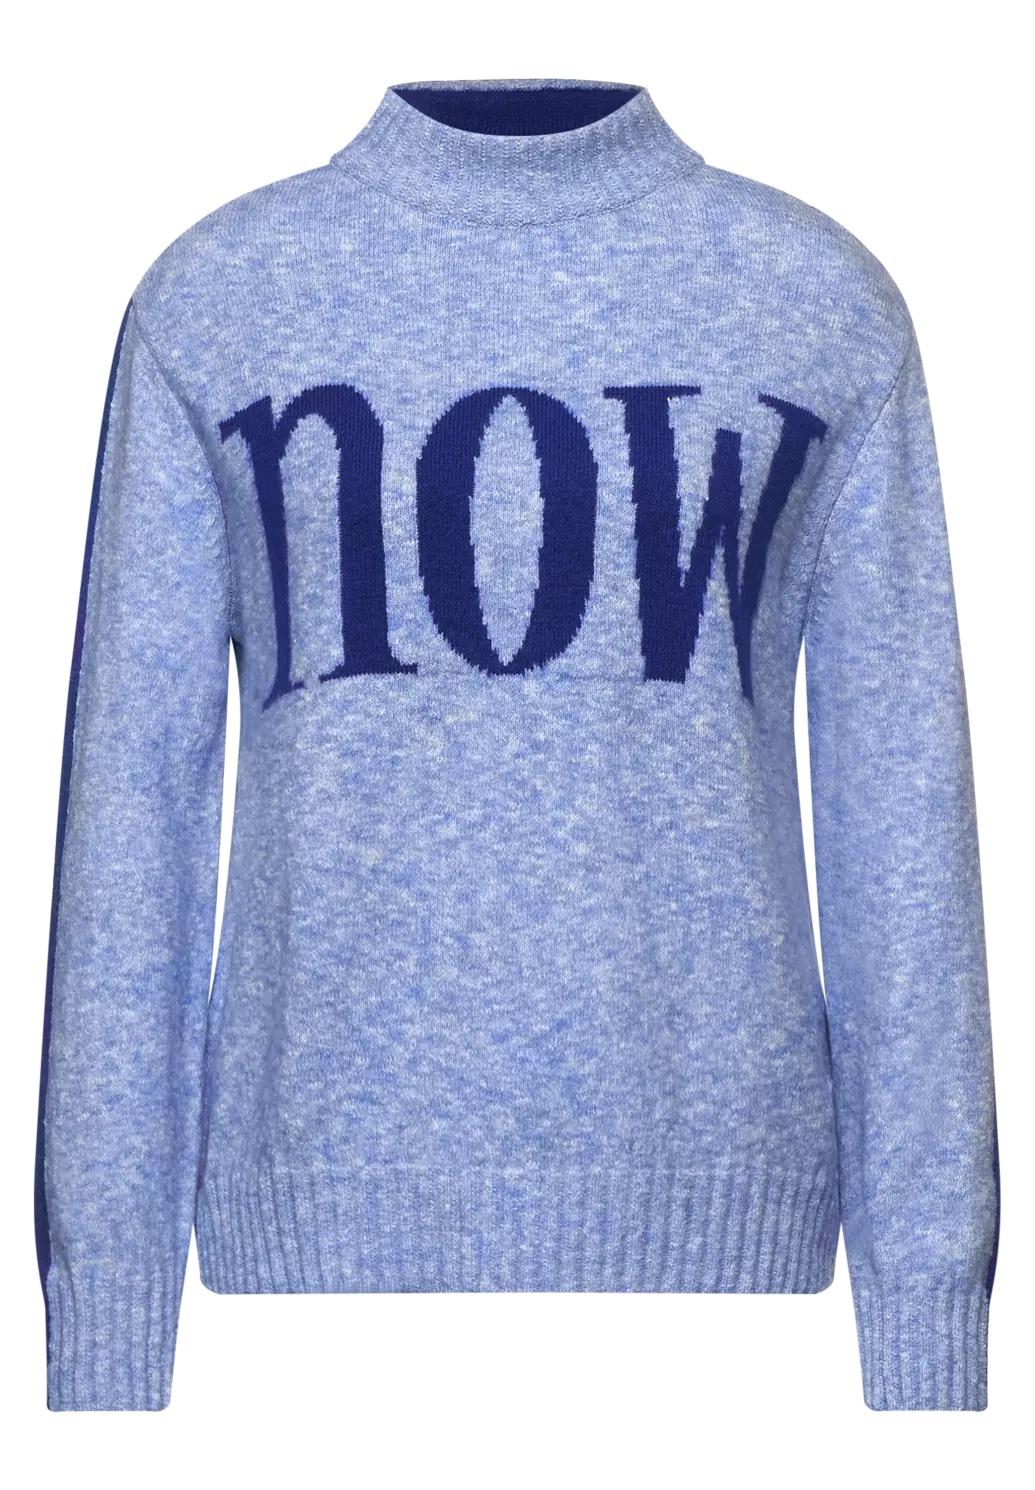 Street One zimný sveter s nápisom NOW, modrý